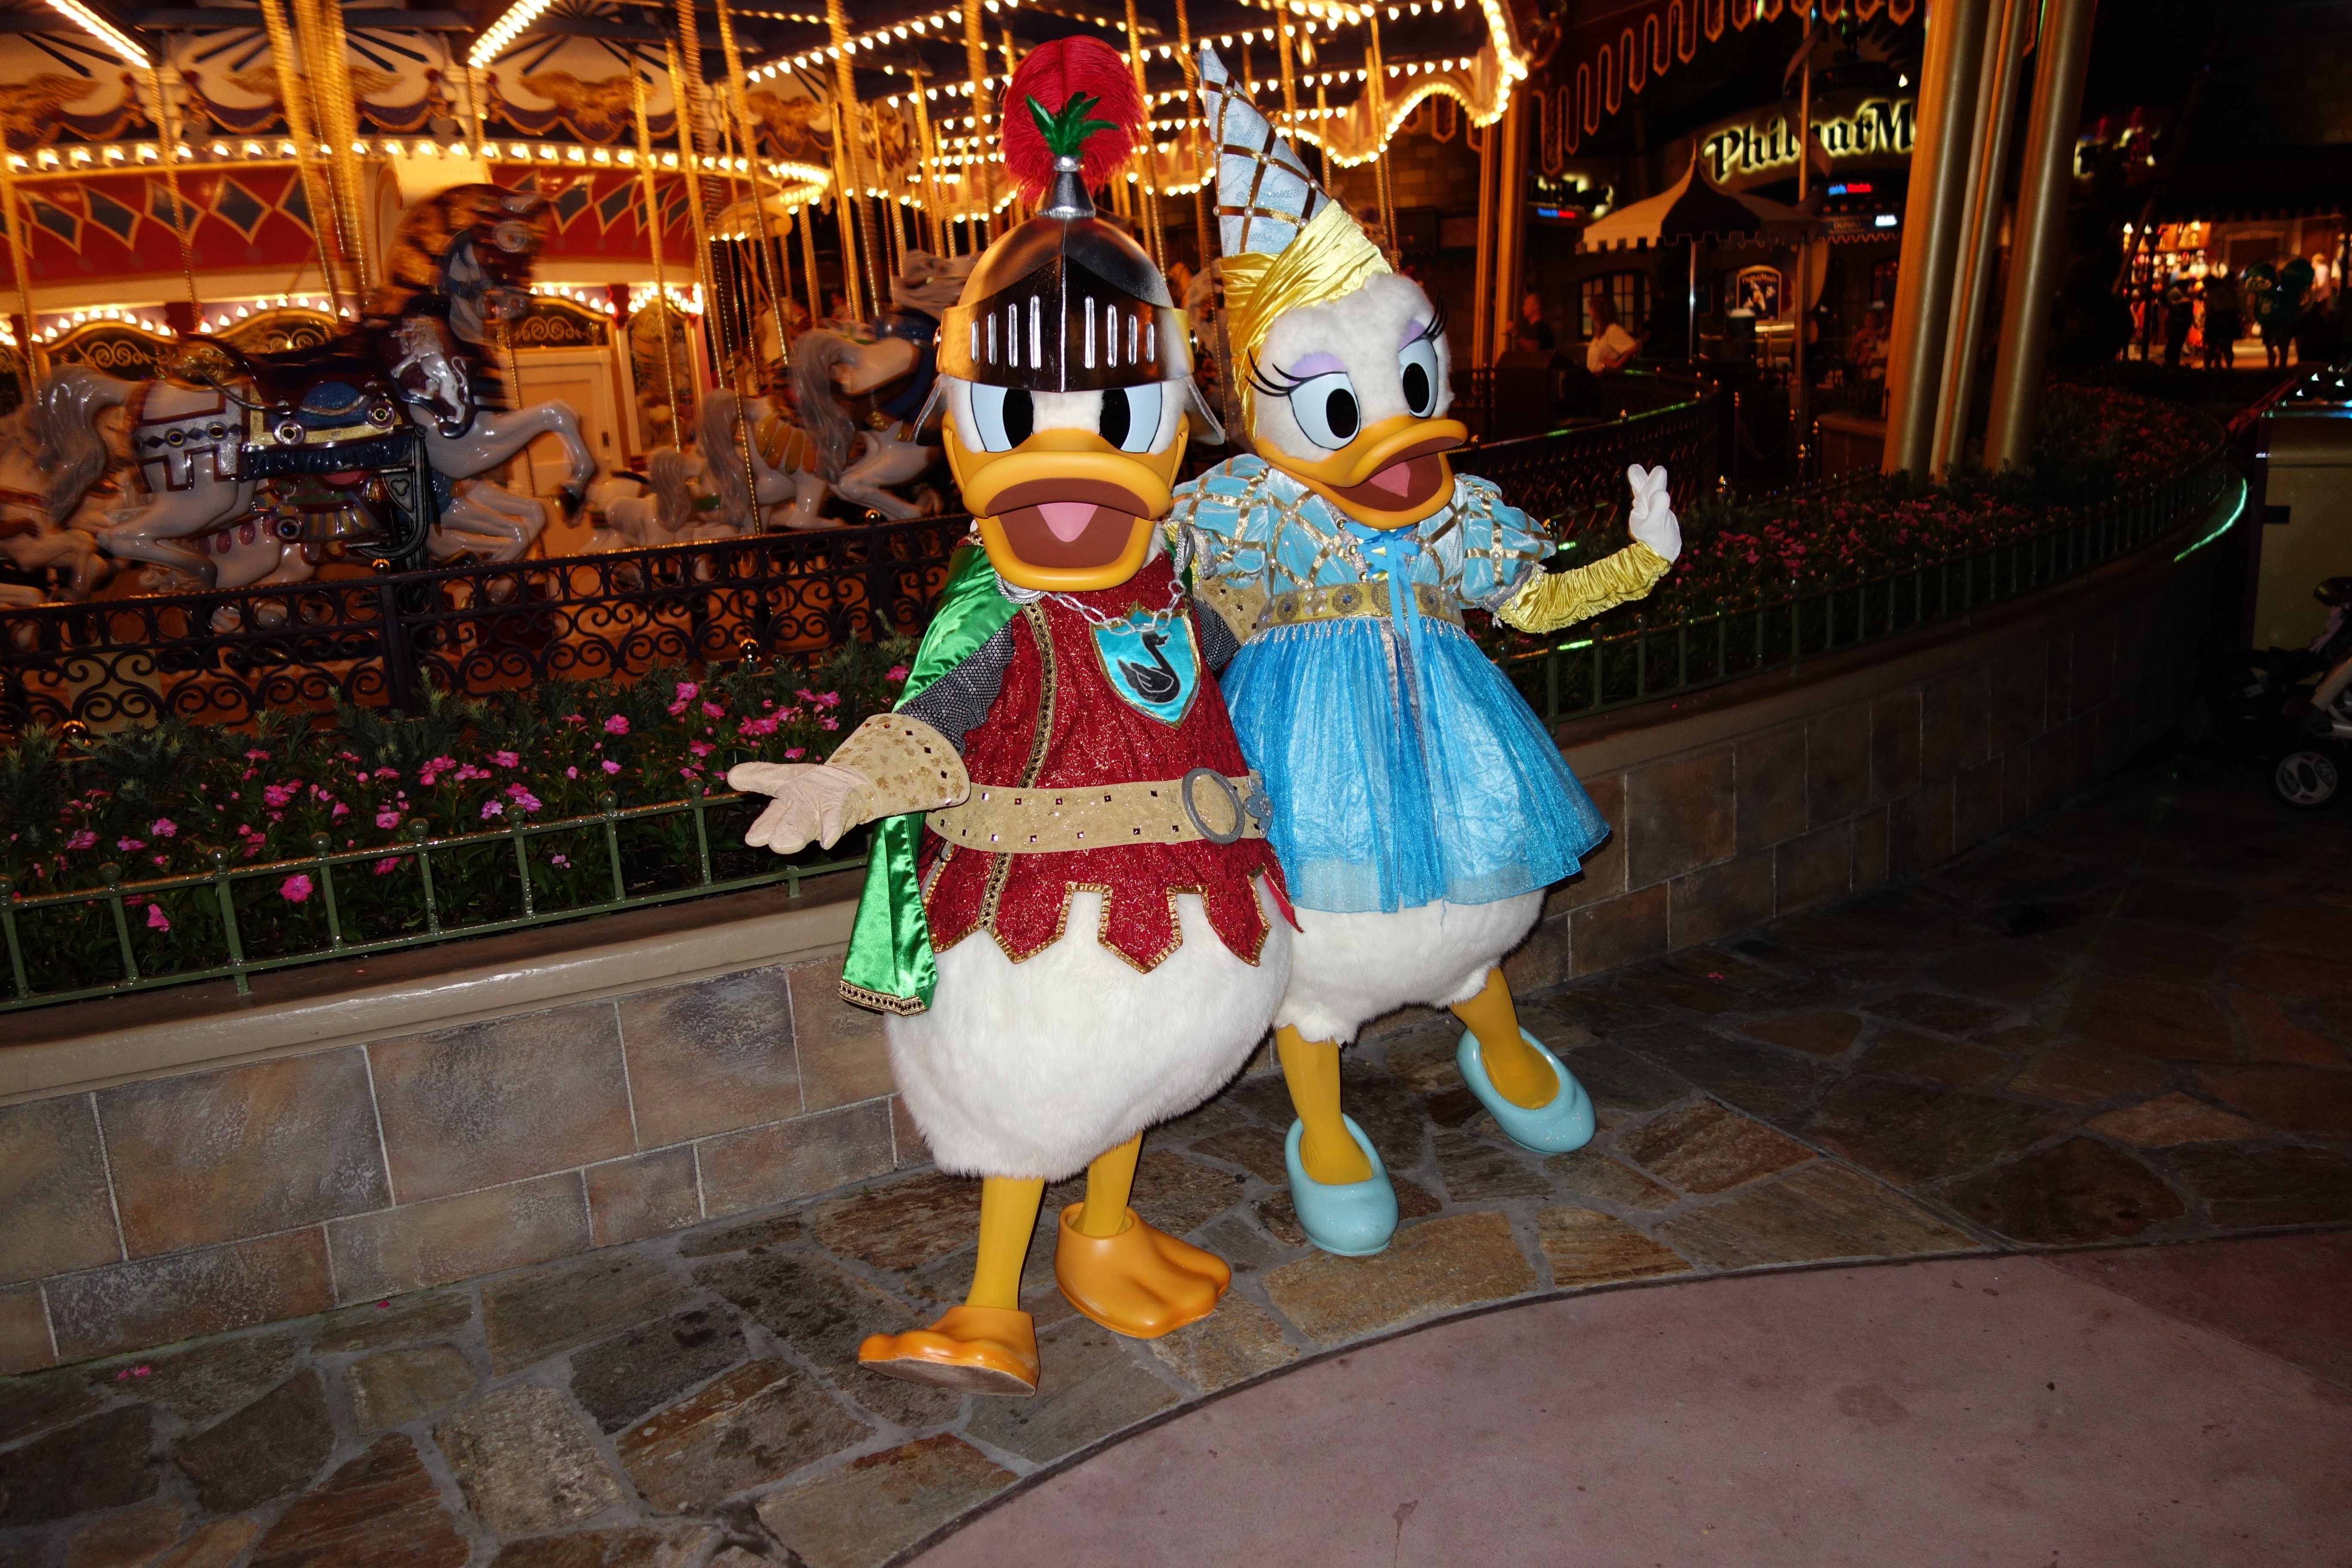 Knight Donald and Princess Daisy